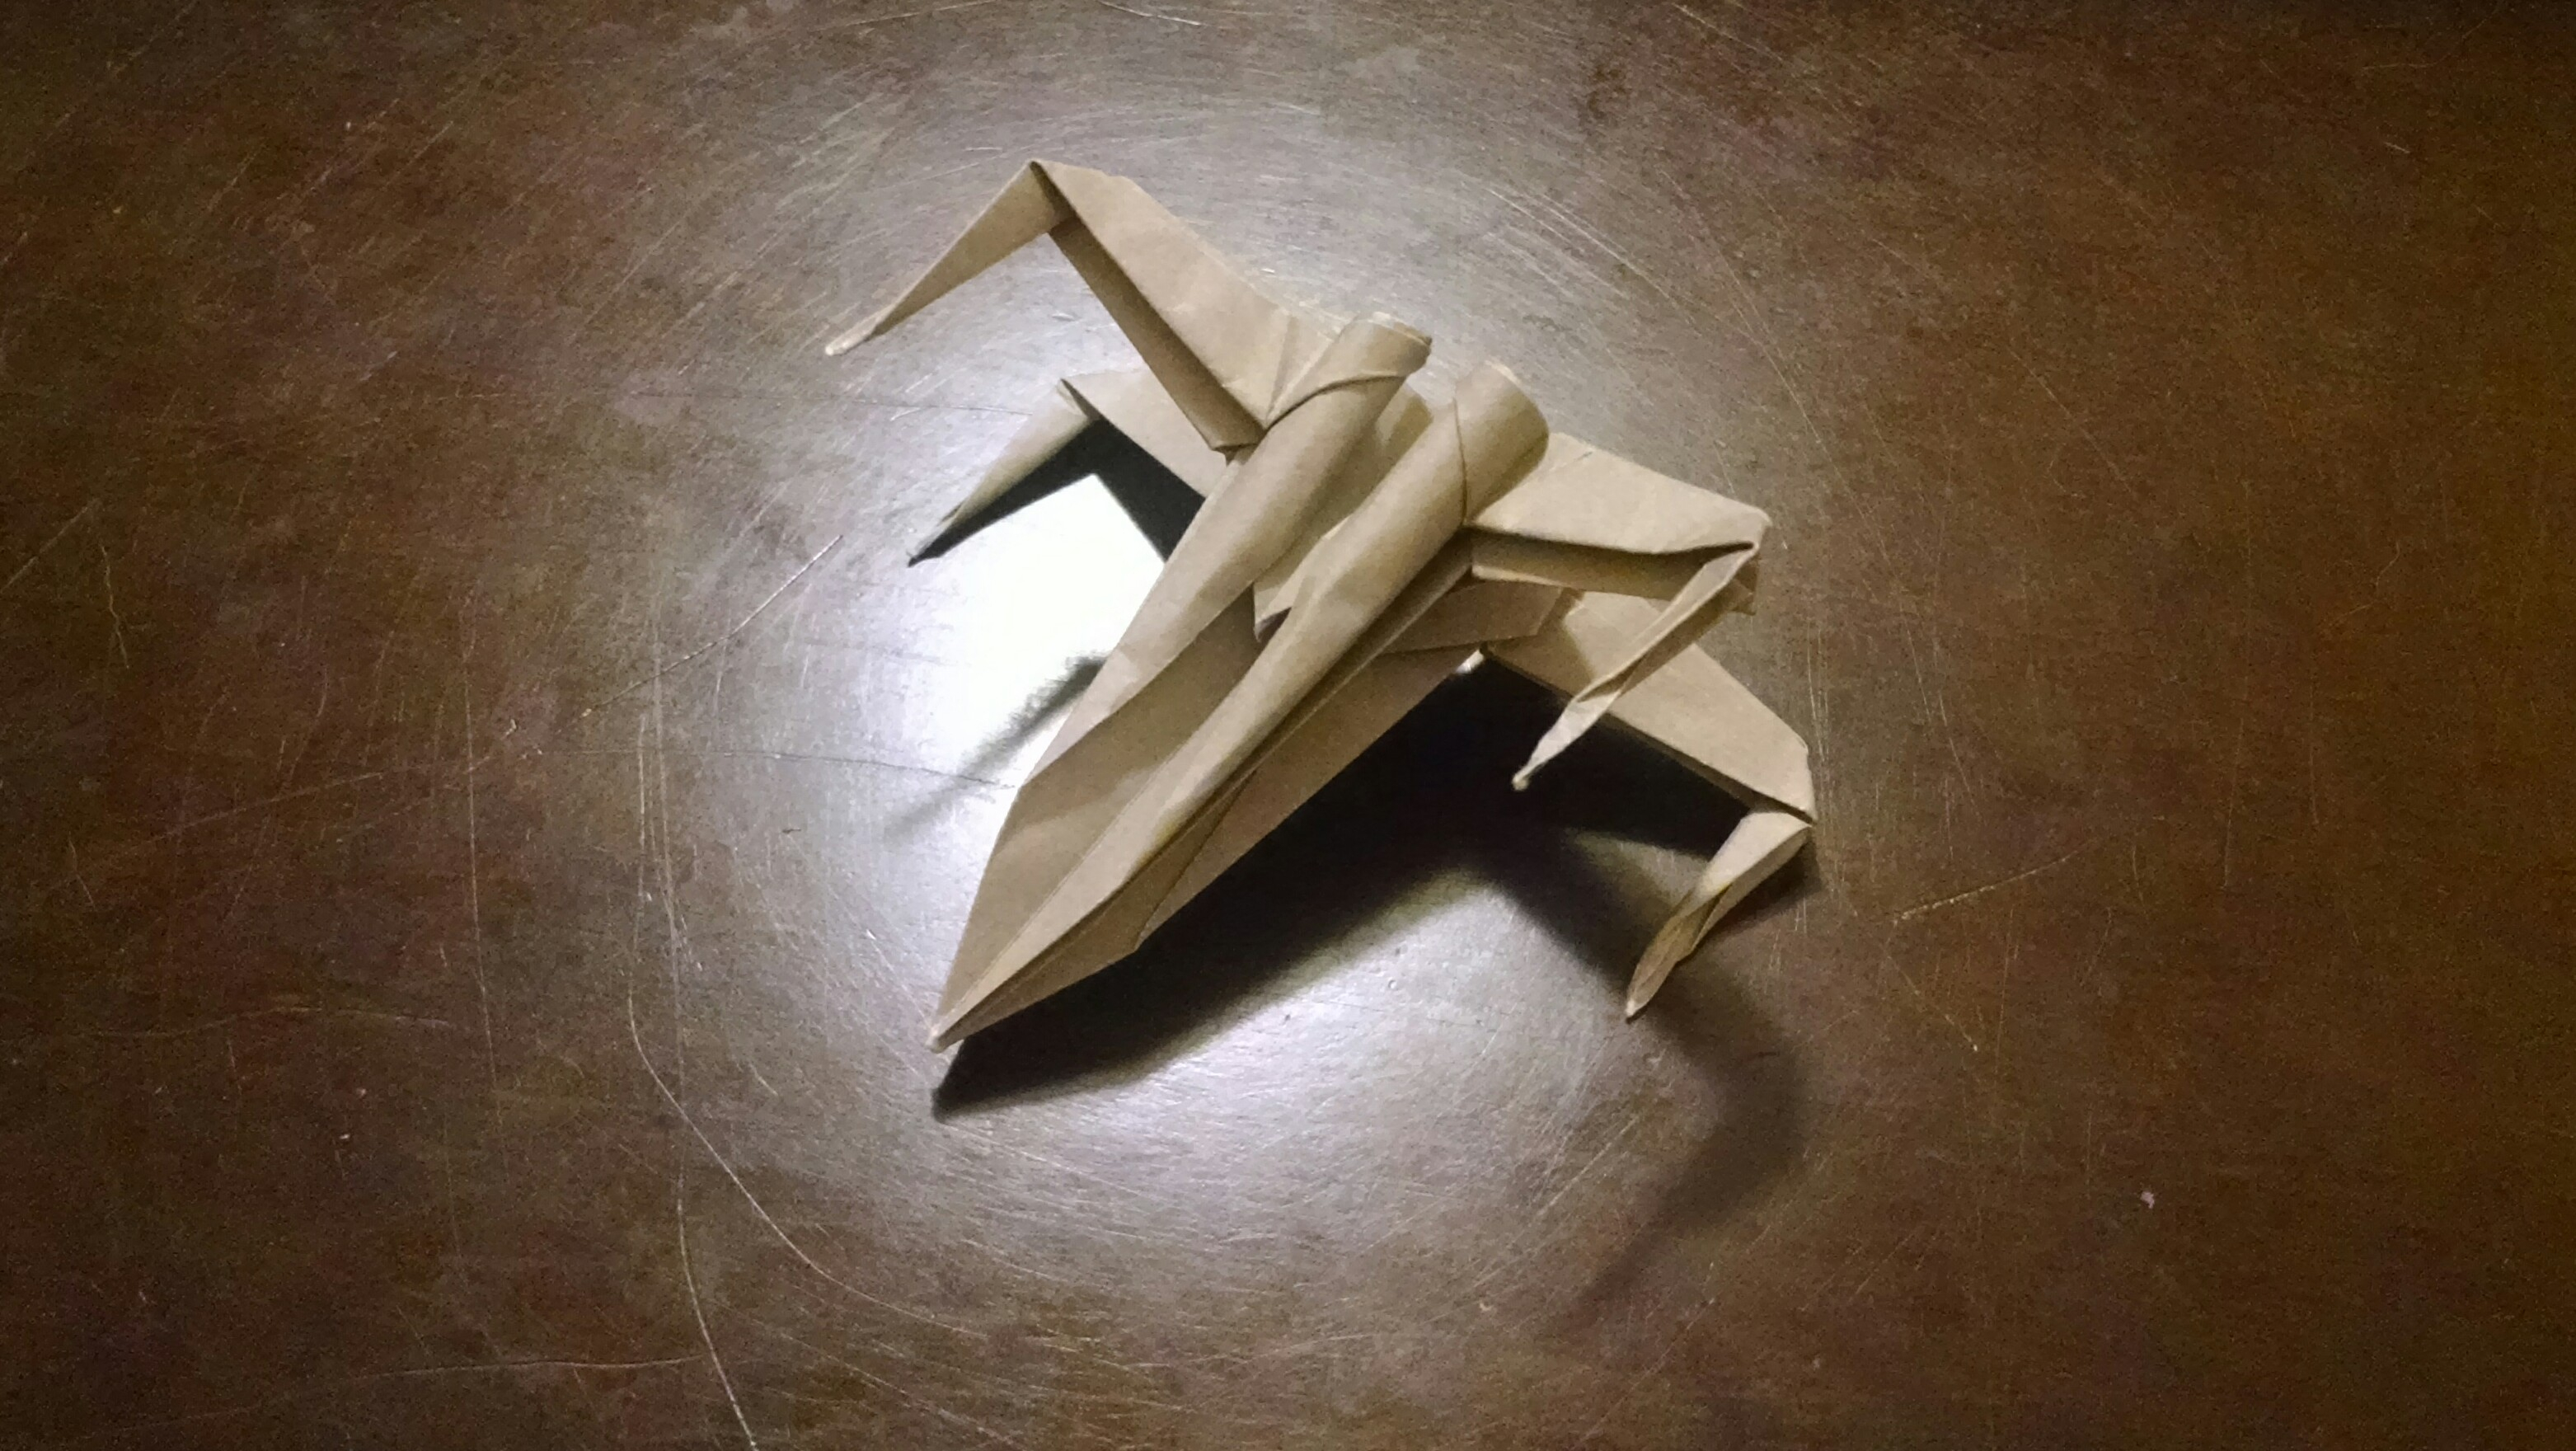 Star Wars X Wing Origami I Tried It Origami Star Wars X Wing Mad Art Lab